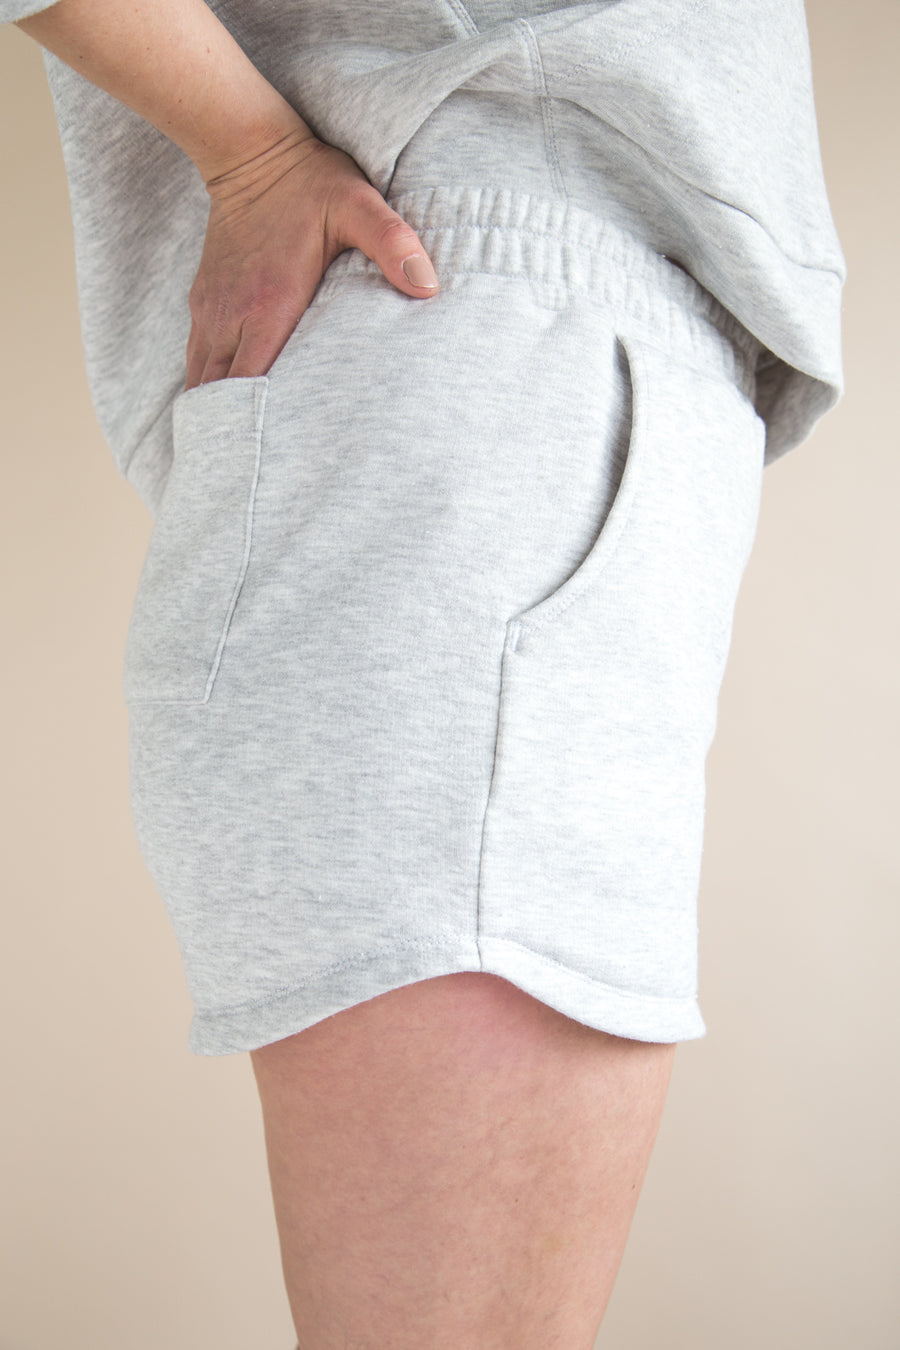 Plateau Joggers Pattern | Jogging Pants and shorts pattern | by Closet Core Patterns